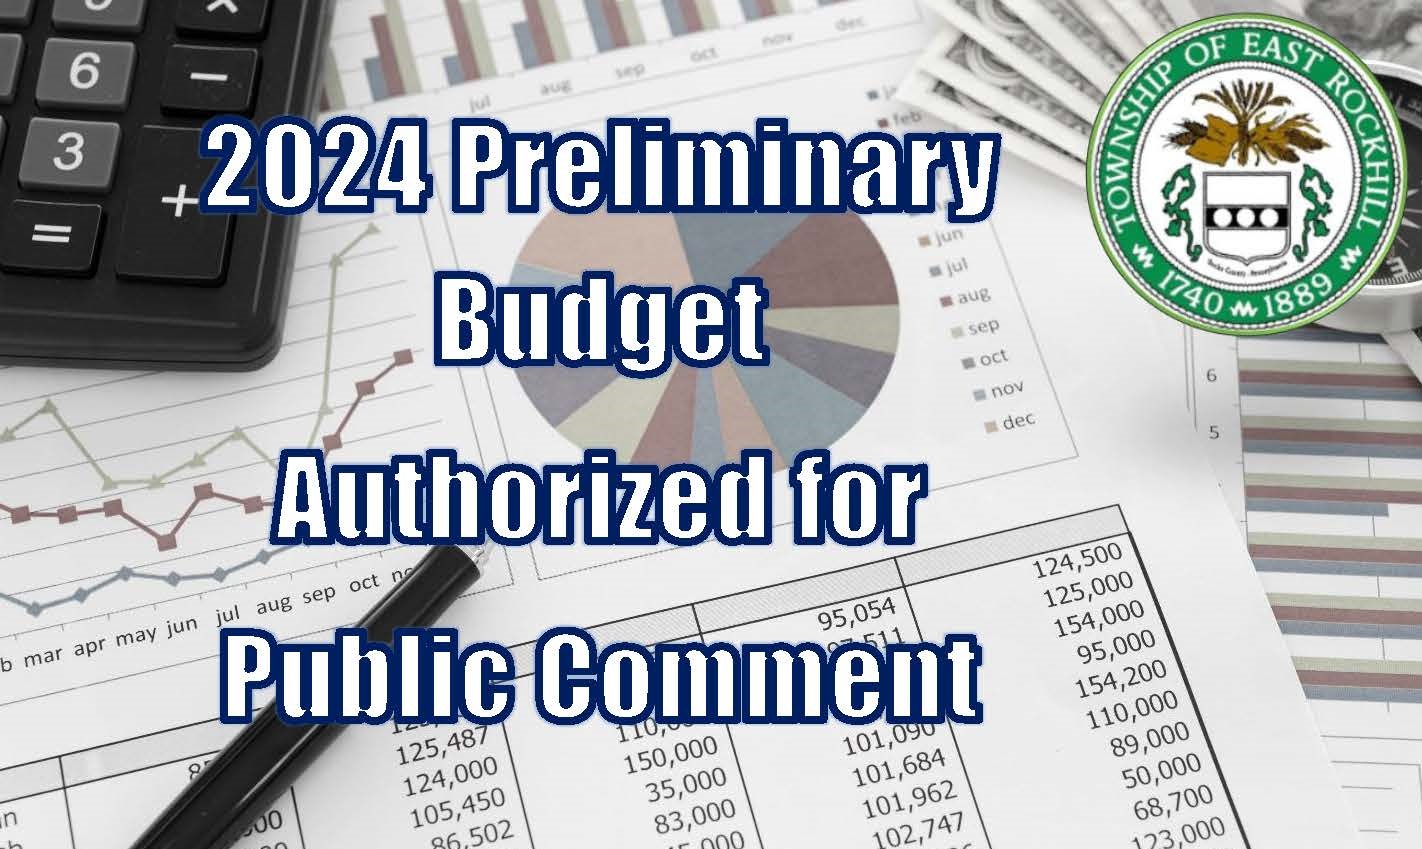 2024 Budget for public comment